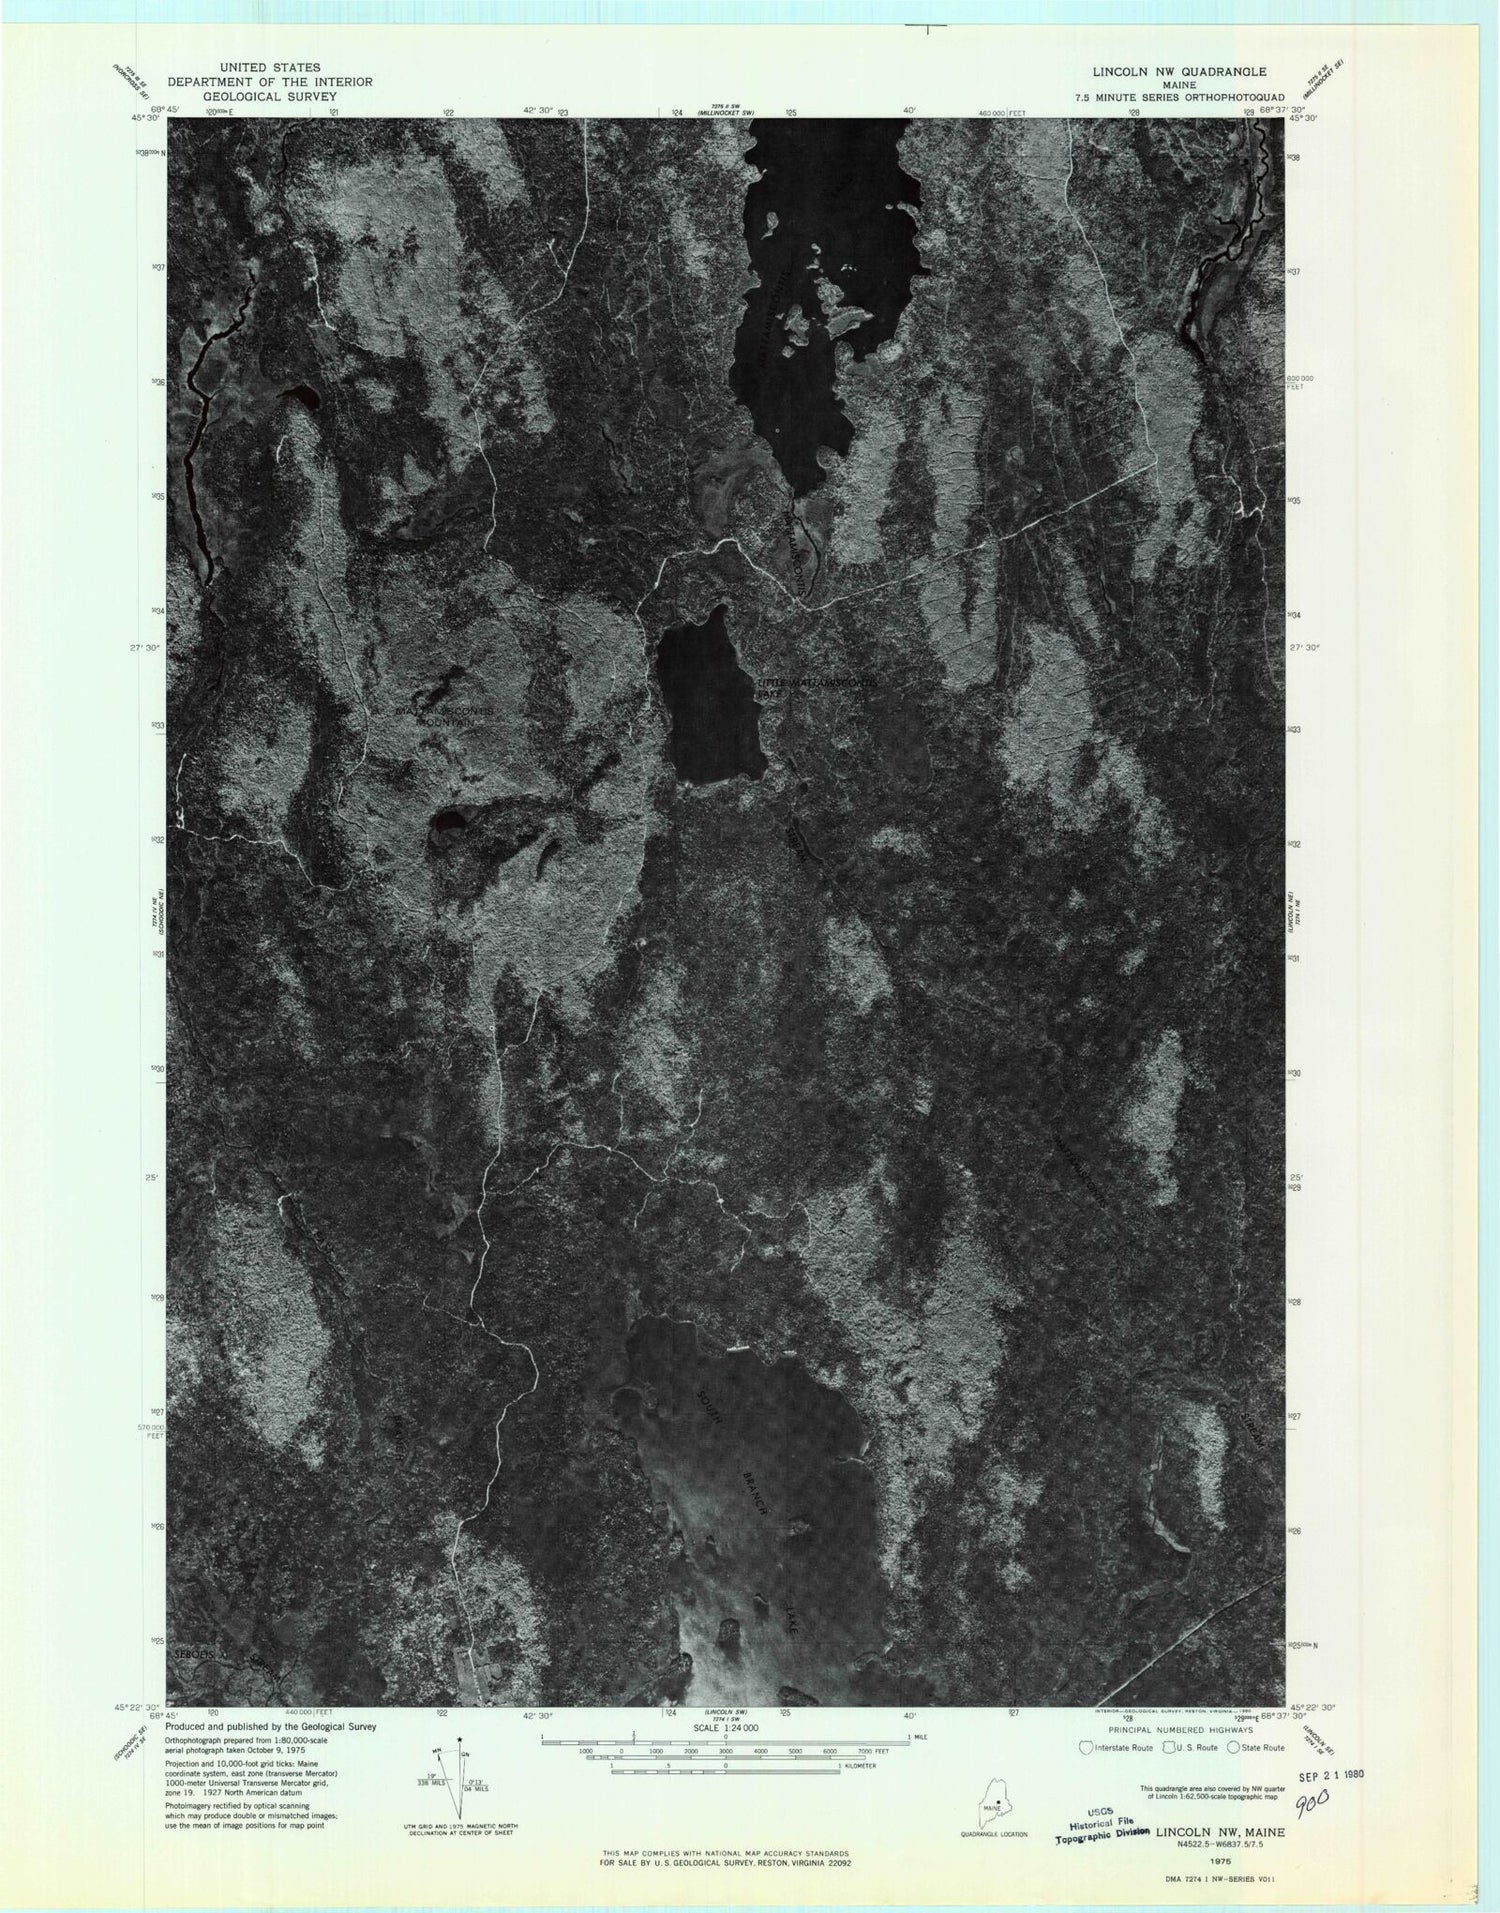 Classic USGS Mattamiscontis Mountain Maine 7.5'x7.5' Topo Map Image